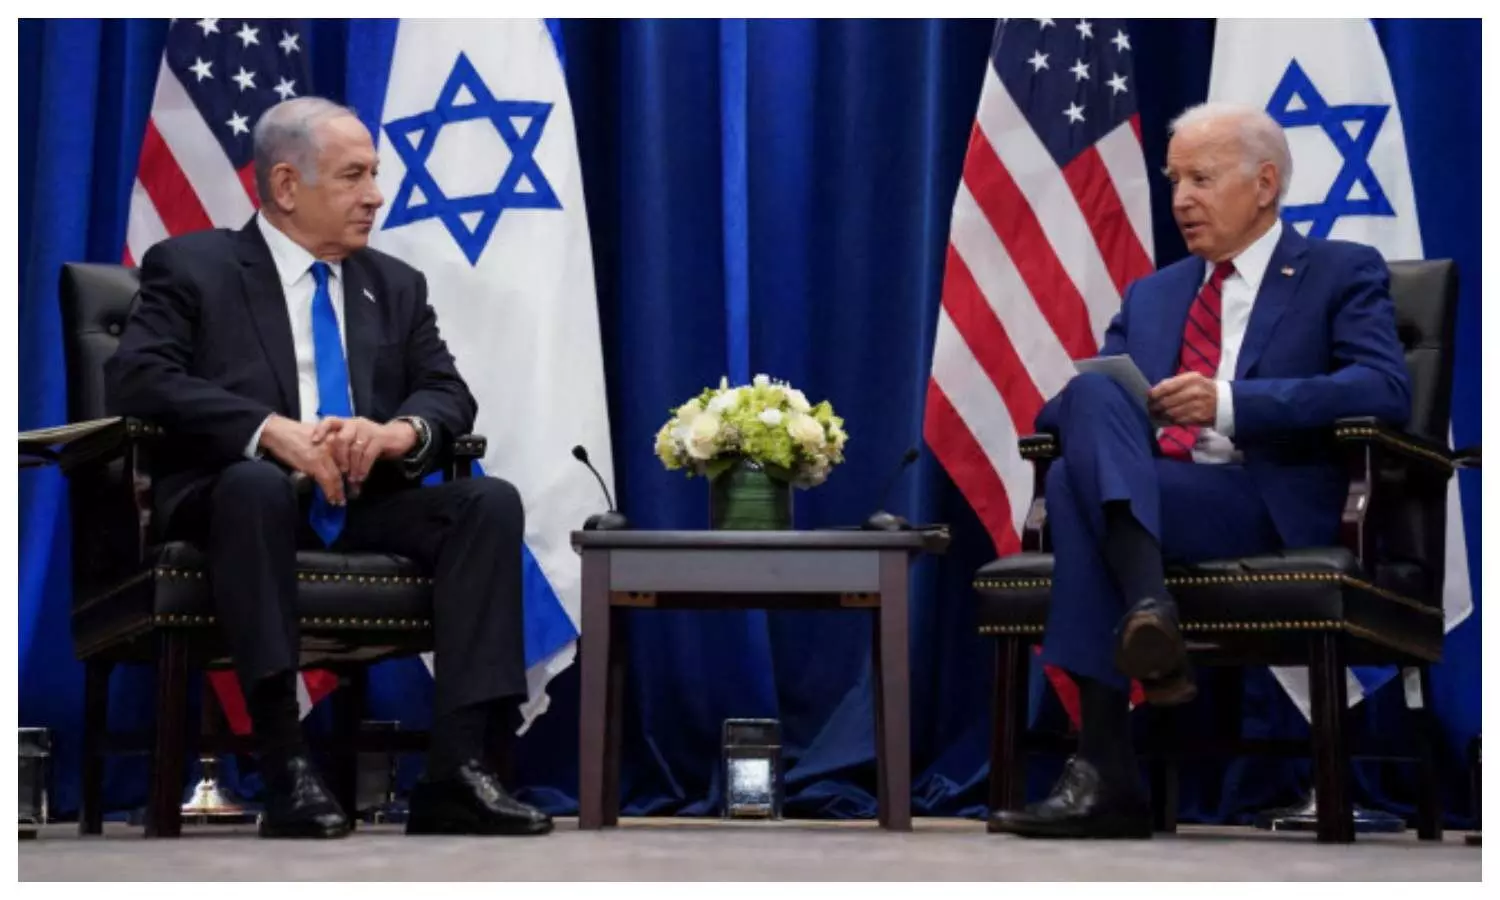 Joe Biden in Israel